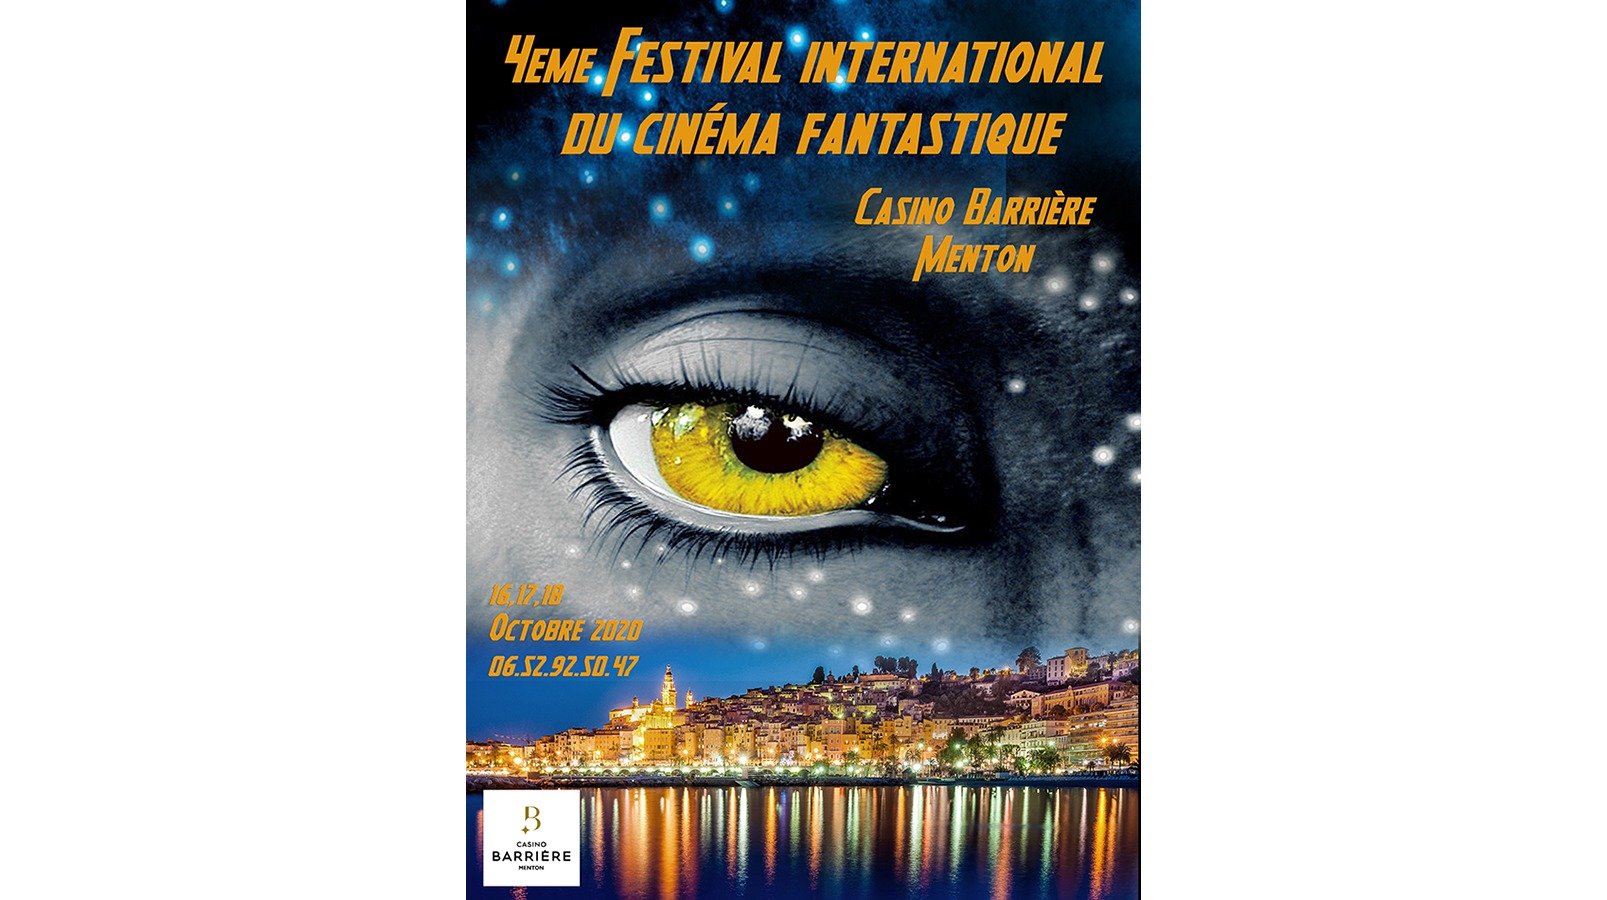 International Fantasy Film Festival 2020, Menton 